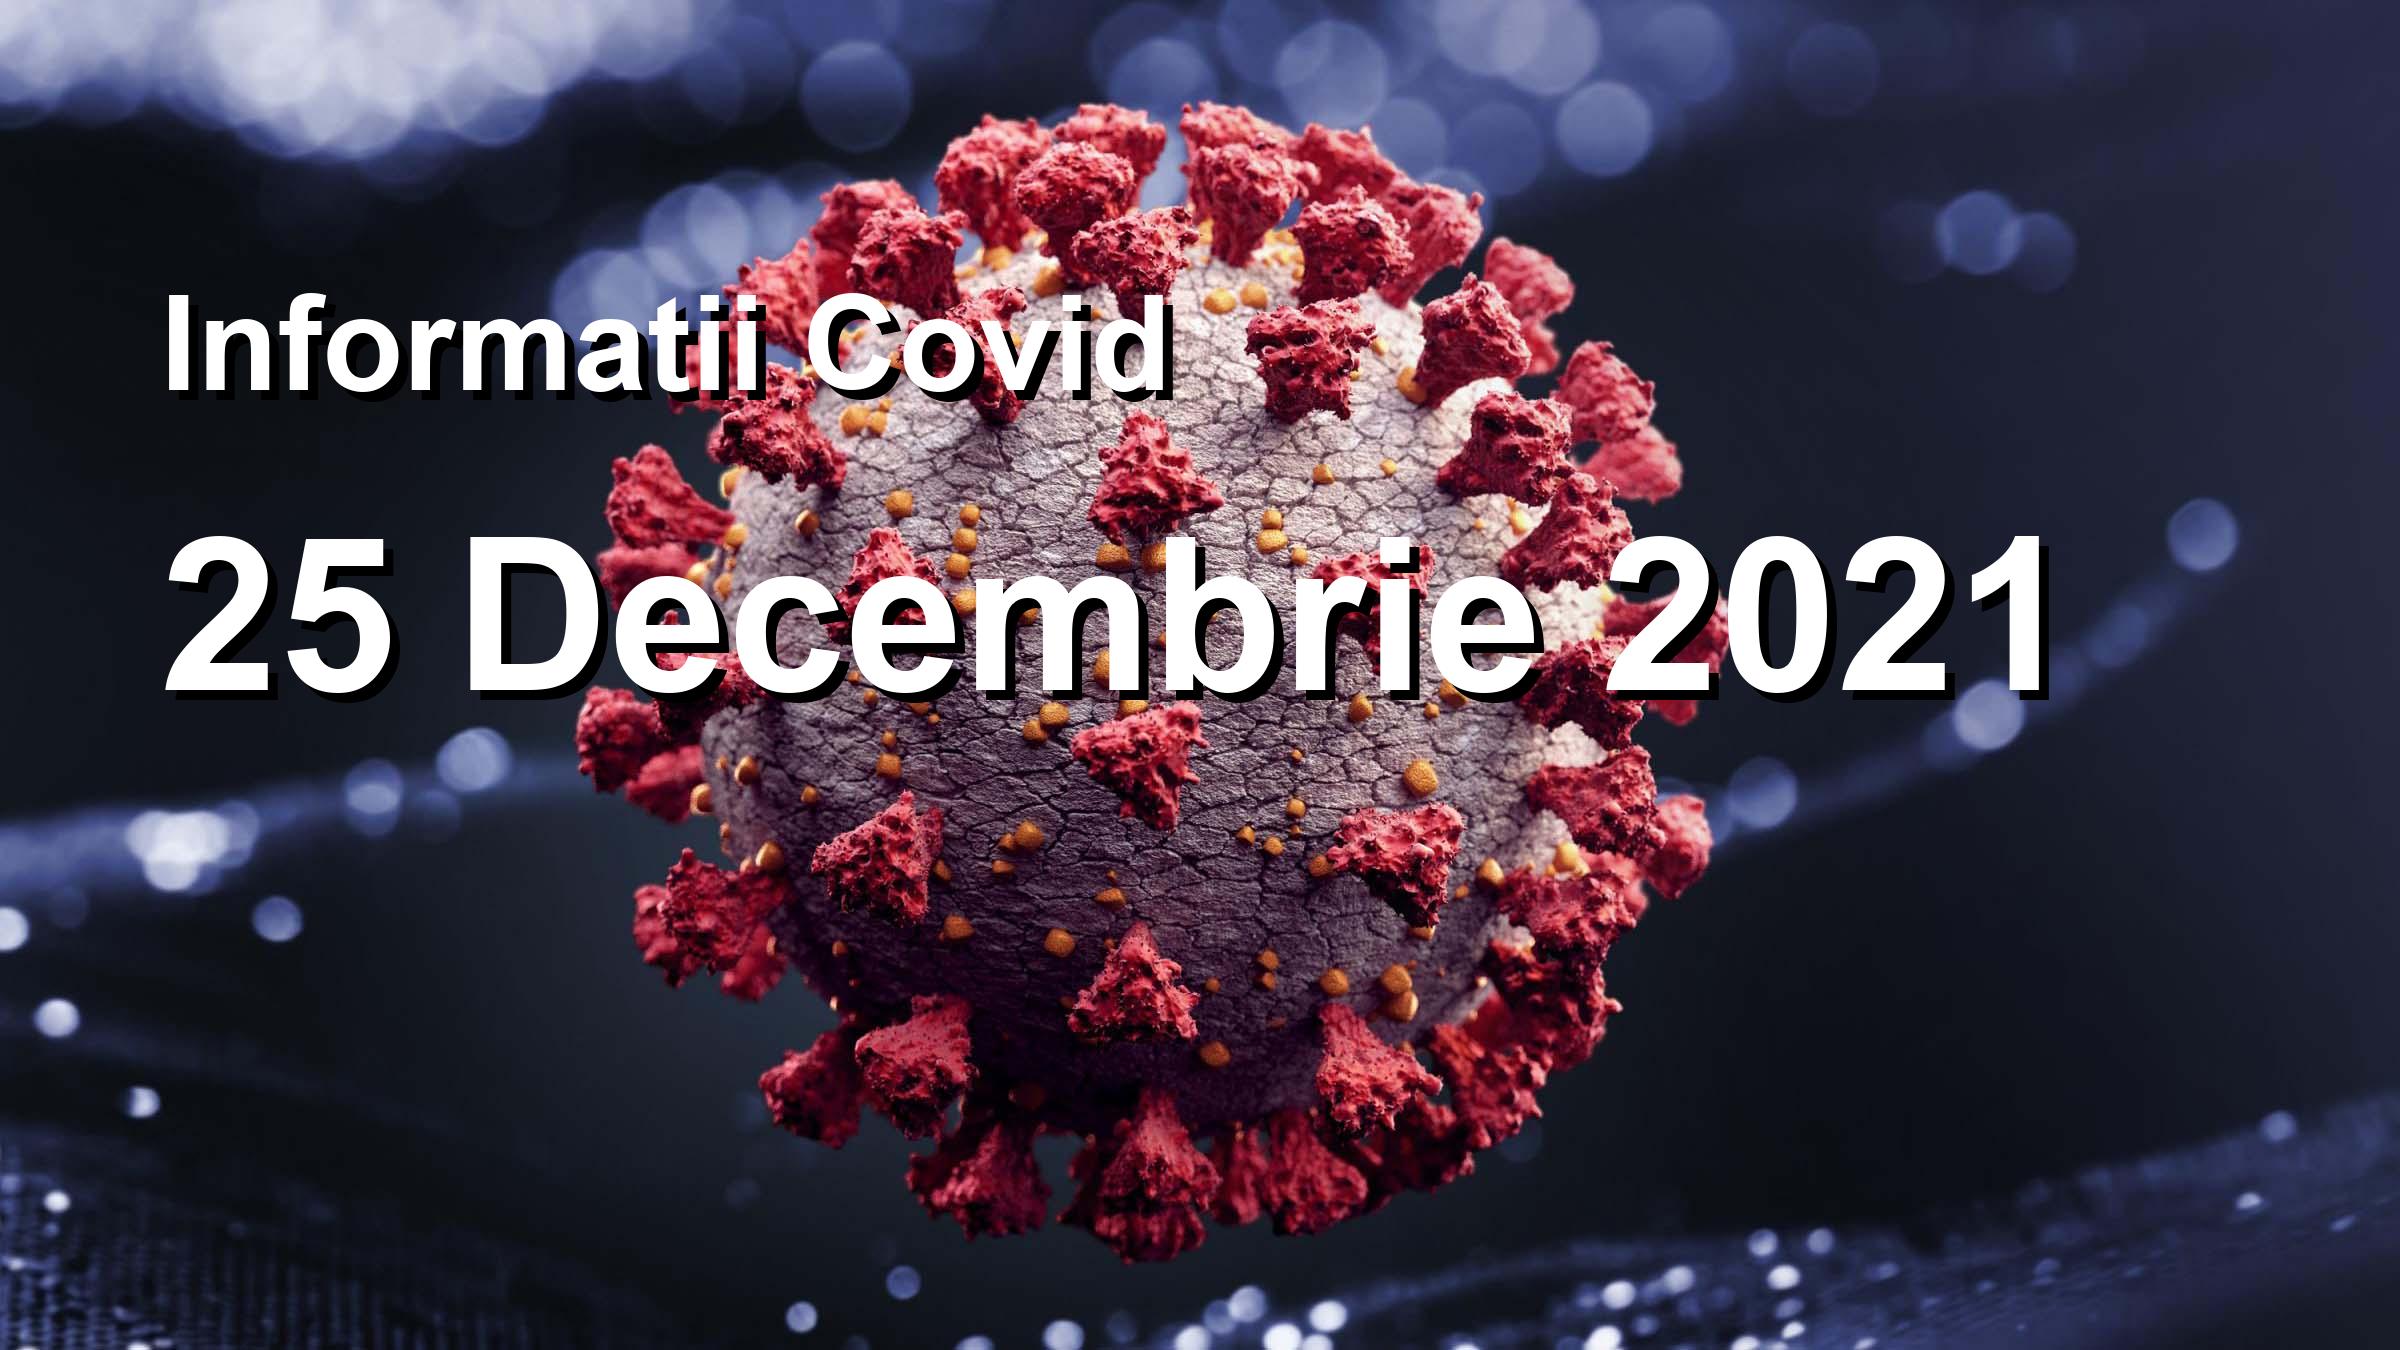 Informatii Covid-19 pentru 25 Decembrie 2021: 598 infectari, 20820 teste. | Coronavirus Romania